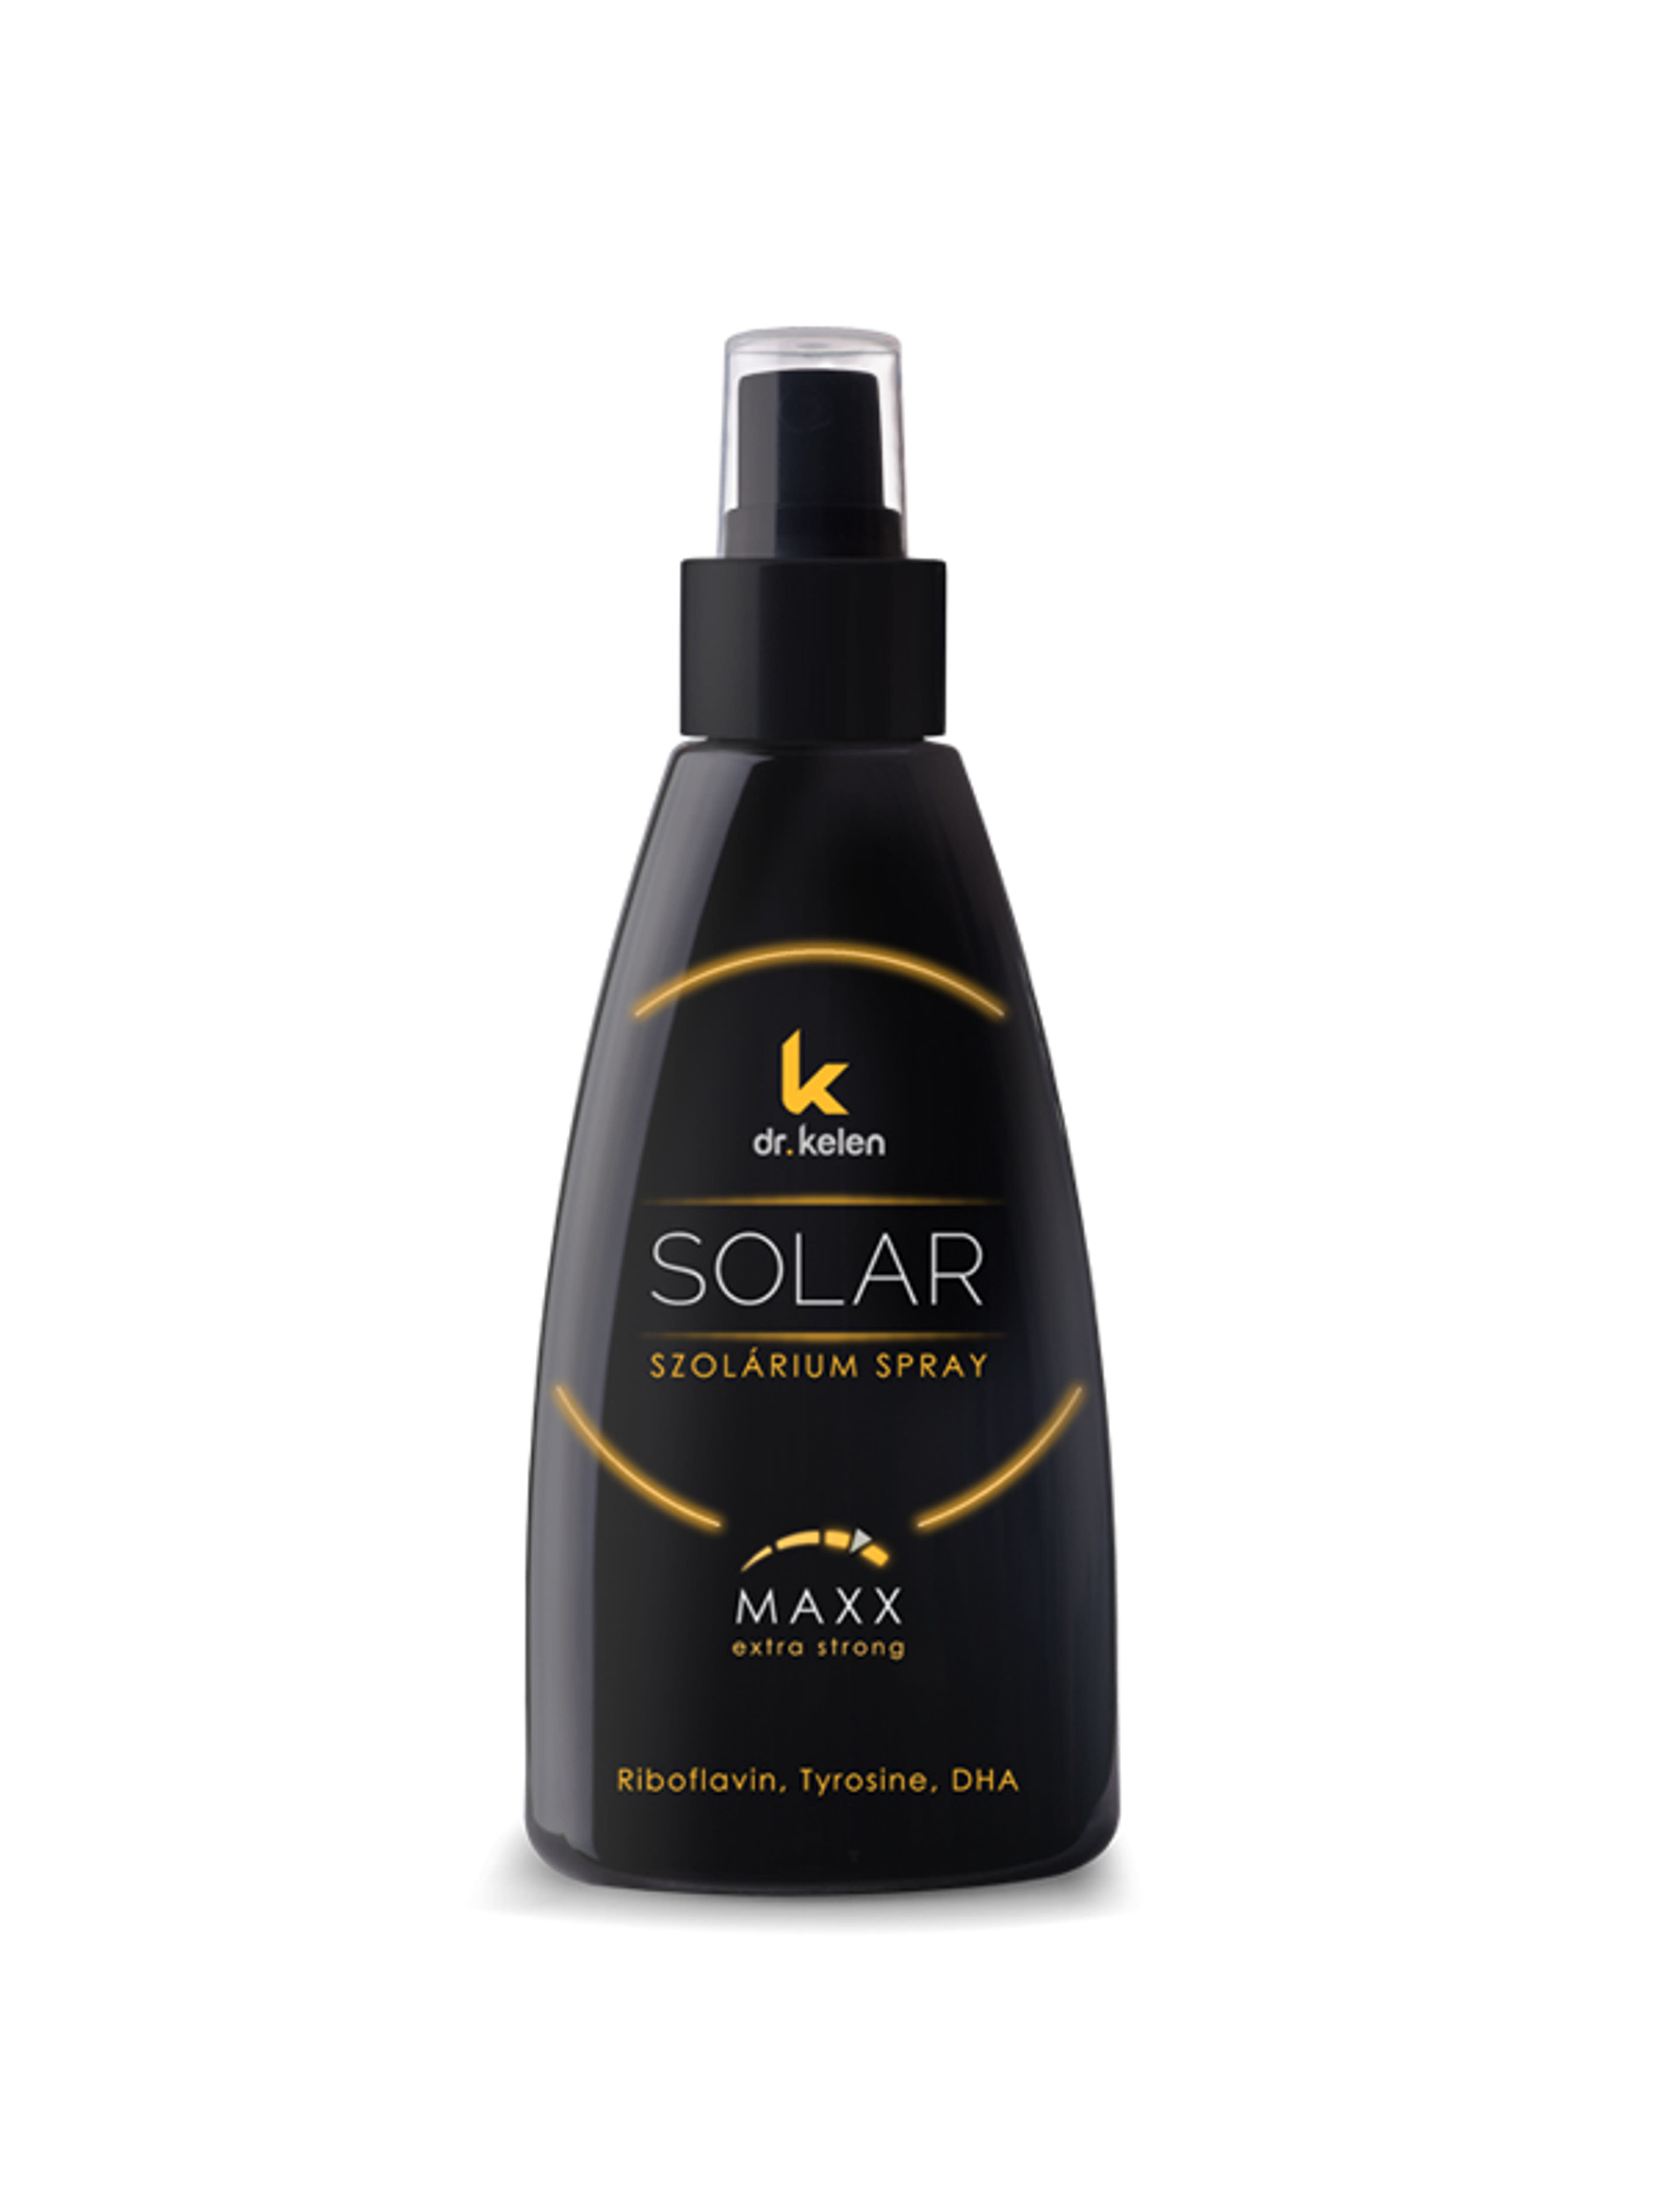 Dr. Kelen sunsolar maxx spray - 150 ml